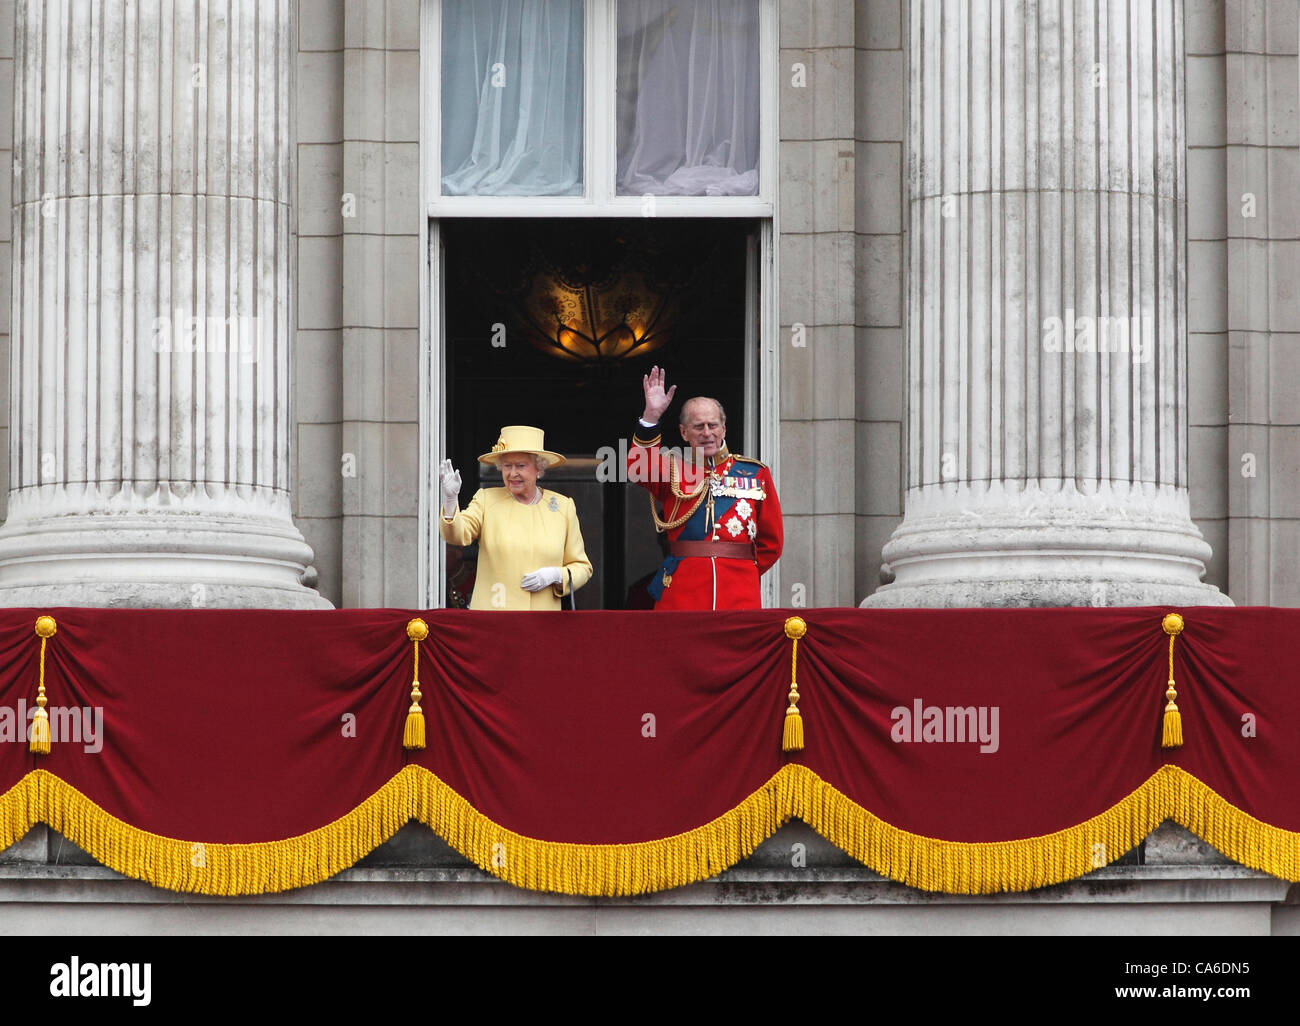 Londres, Royaume-Uni. 16 Juin, 2012. La reine Elizabeth II et le Prince Philip vague depuis le balcon du palais de Buckingham à la parade de la cérémonie des couleurs Juin 2012 Banque D'Images